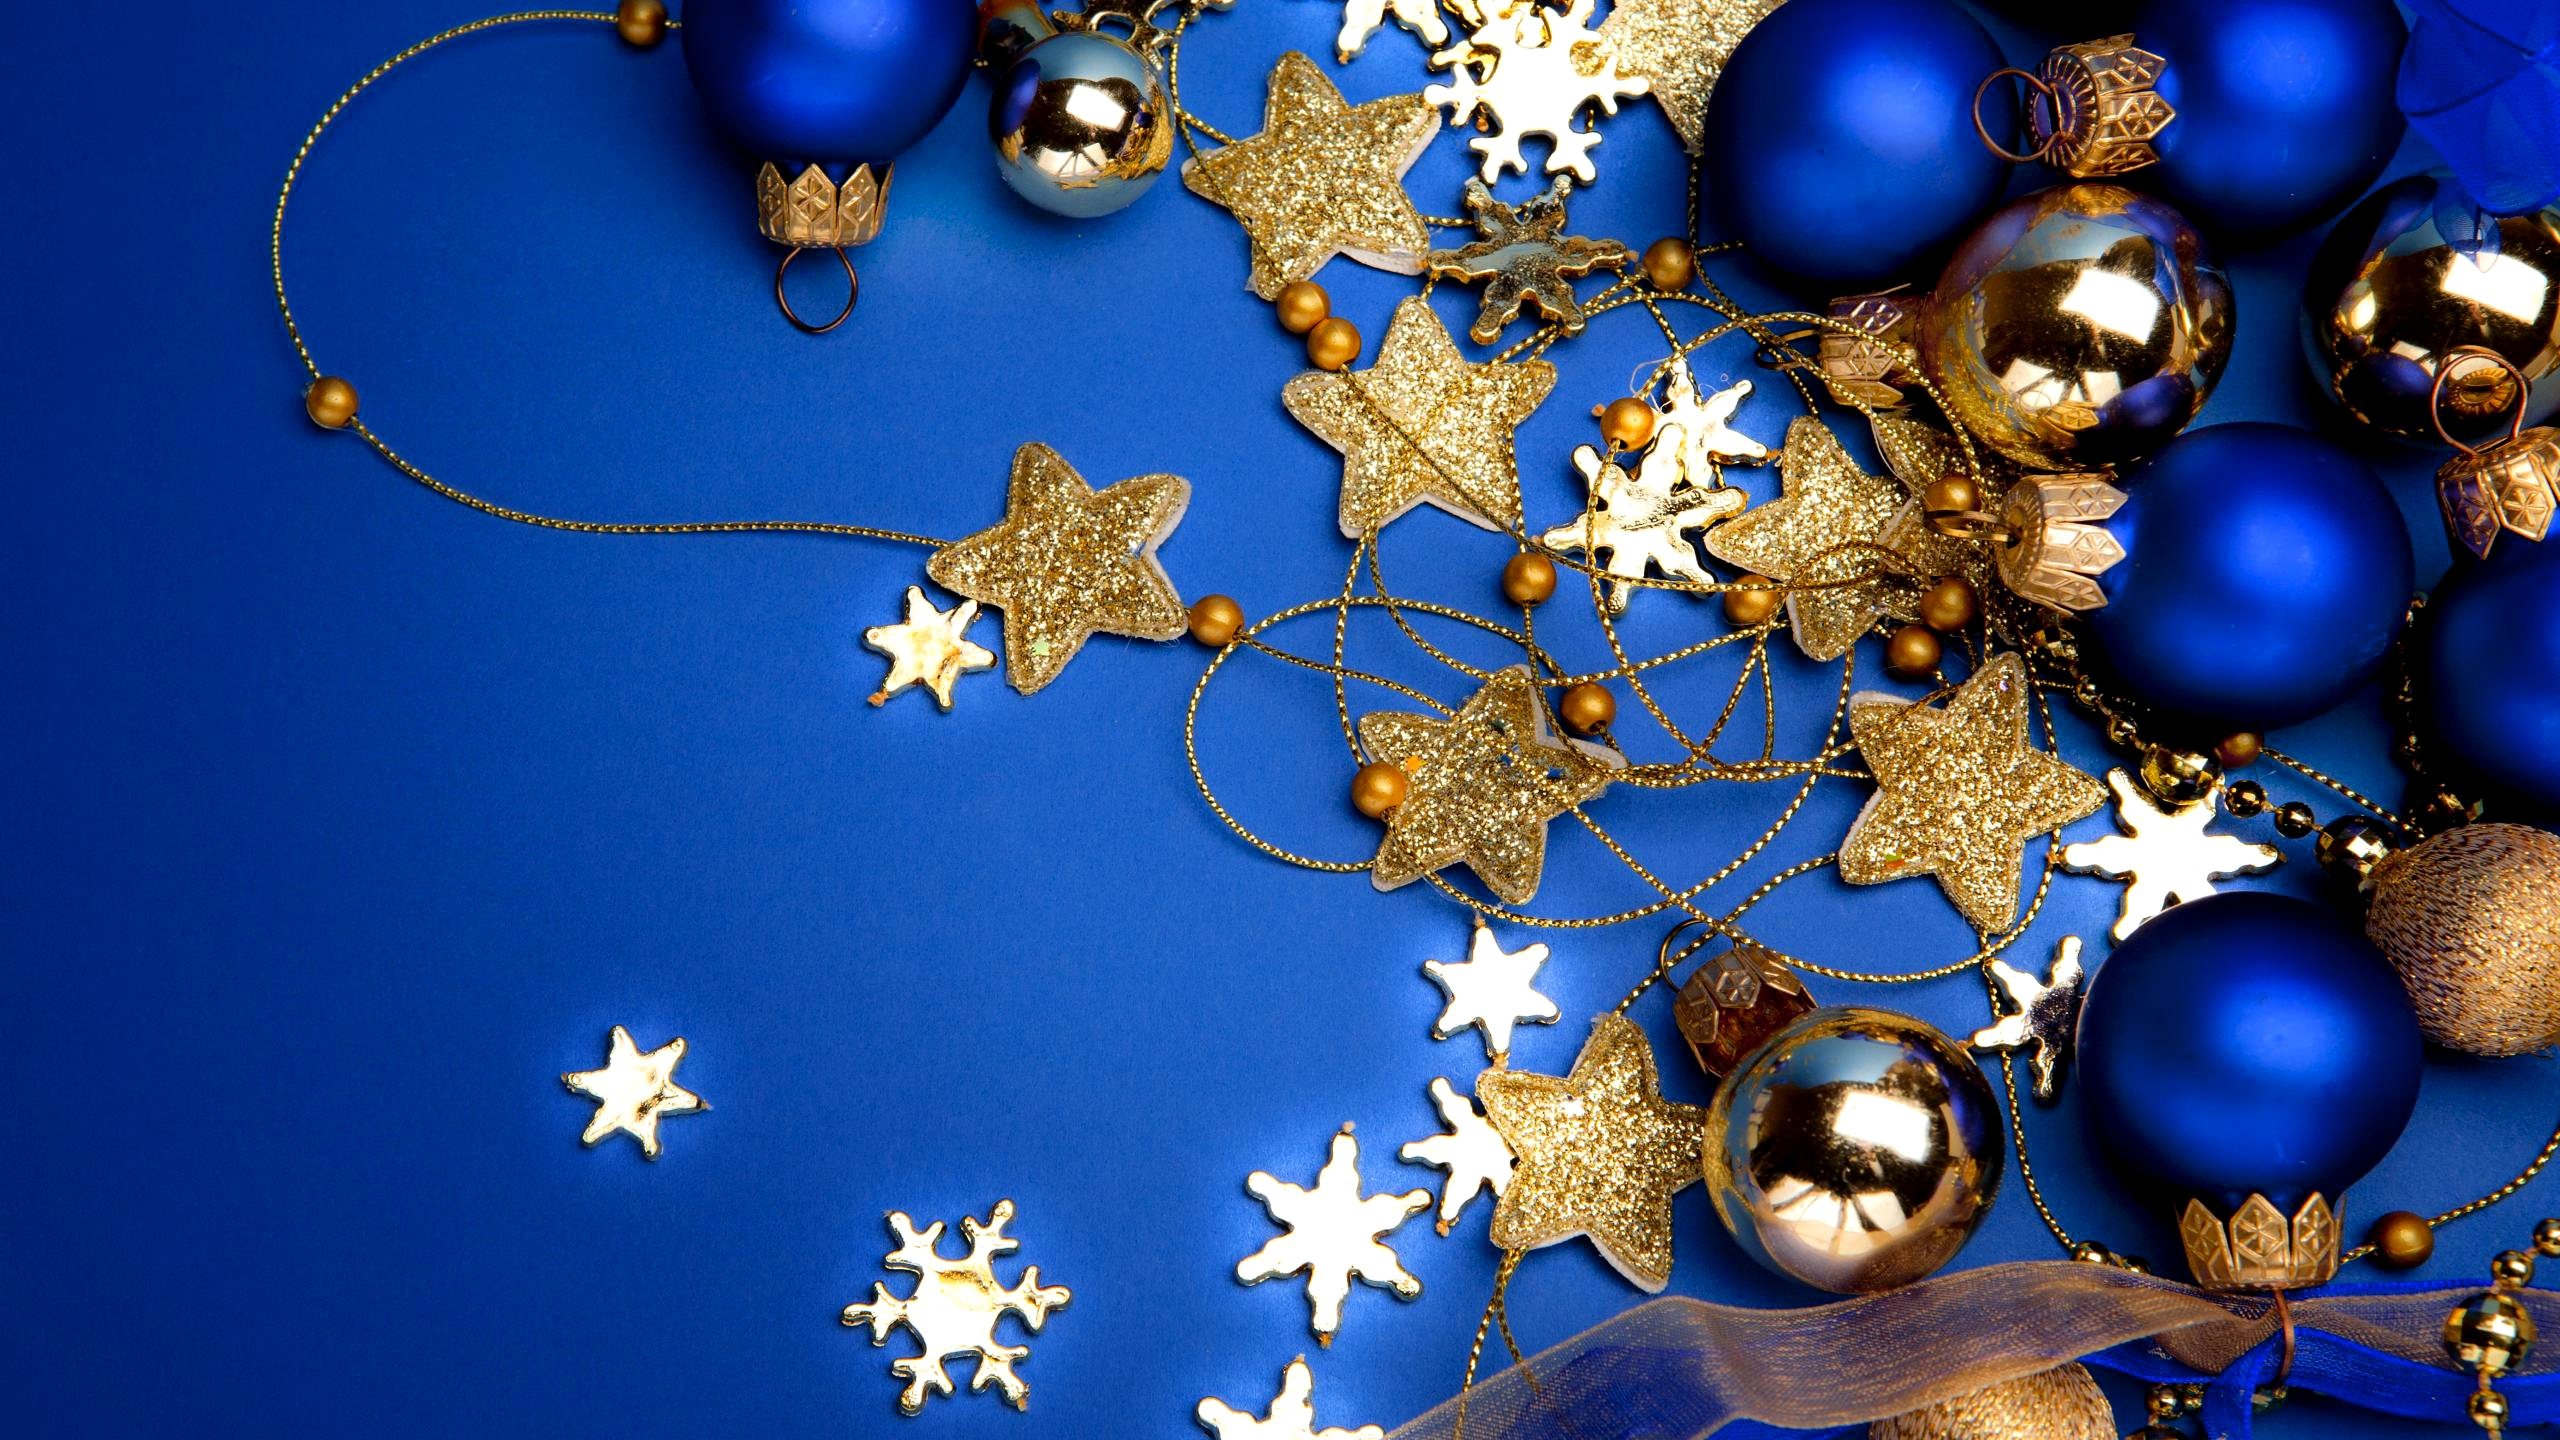 Cập nhật 9999 Desktop background Christmas pictures đẹp nhất cho mùa lễ hội